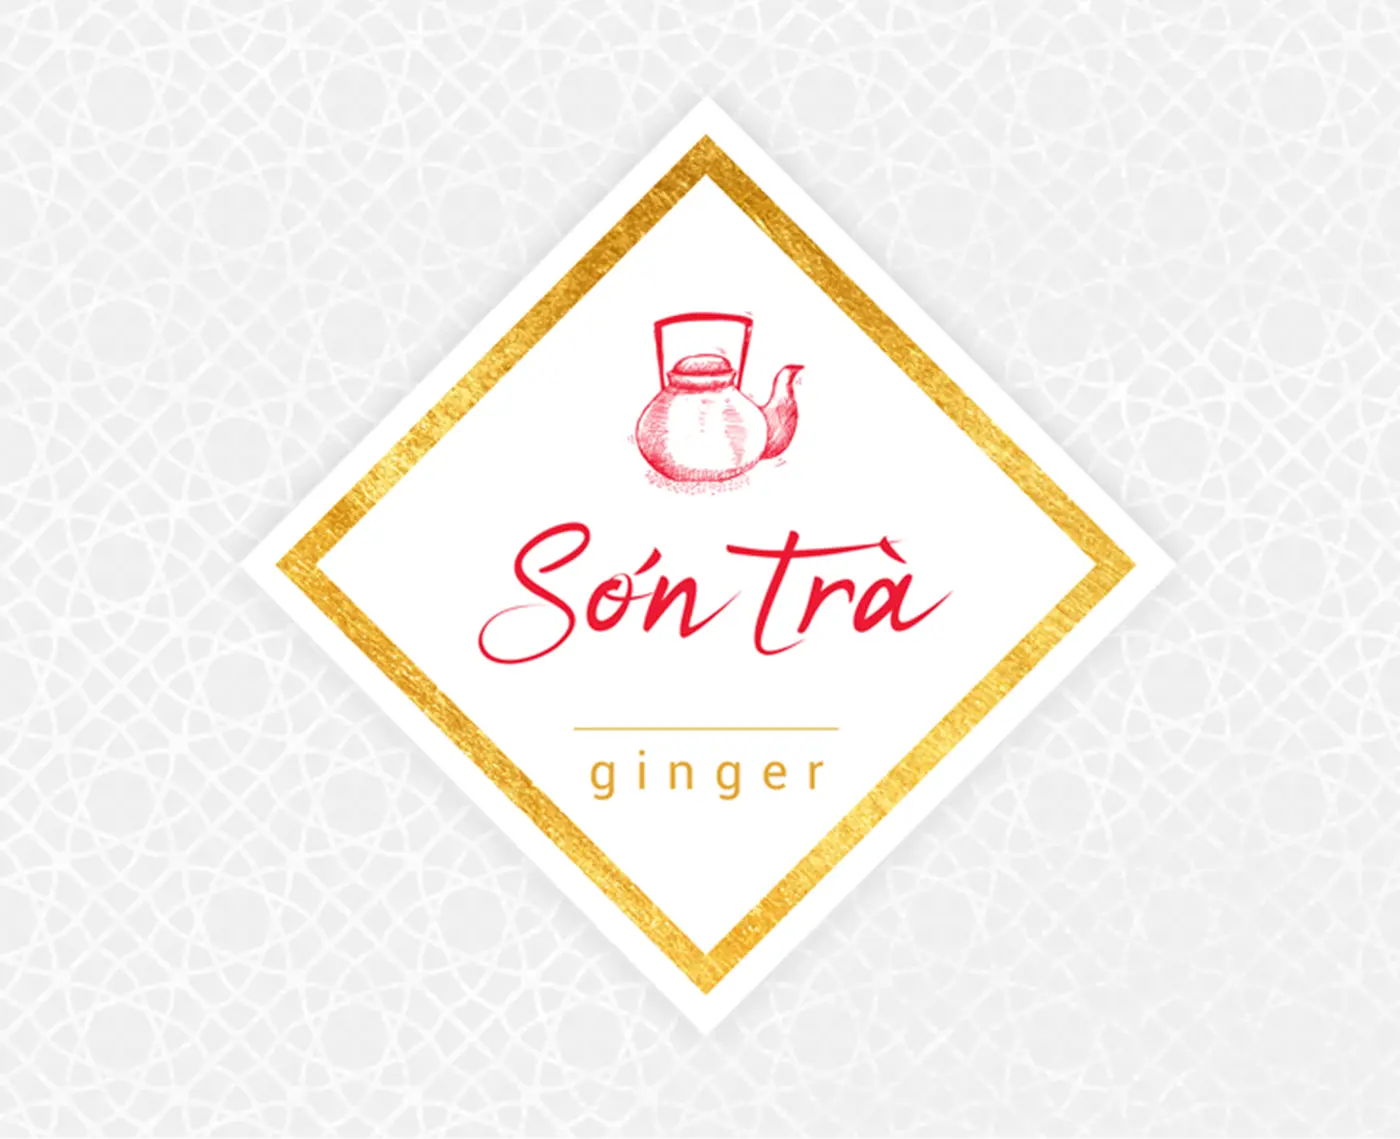 Logotipo de Son Tra con una tetera y letras doradas